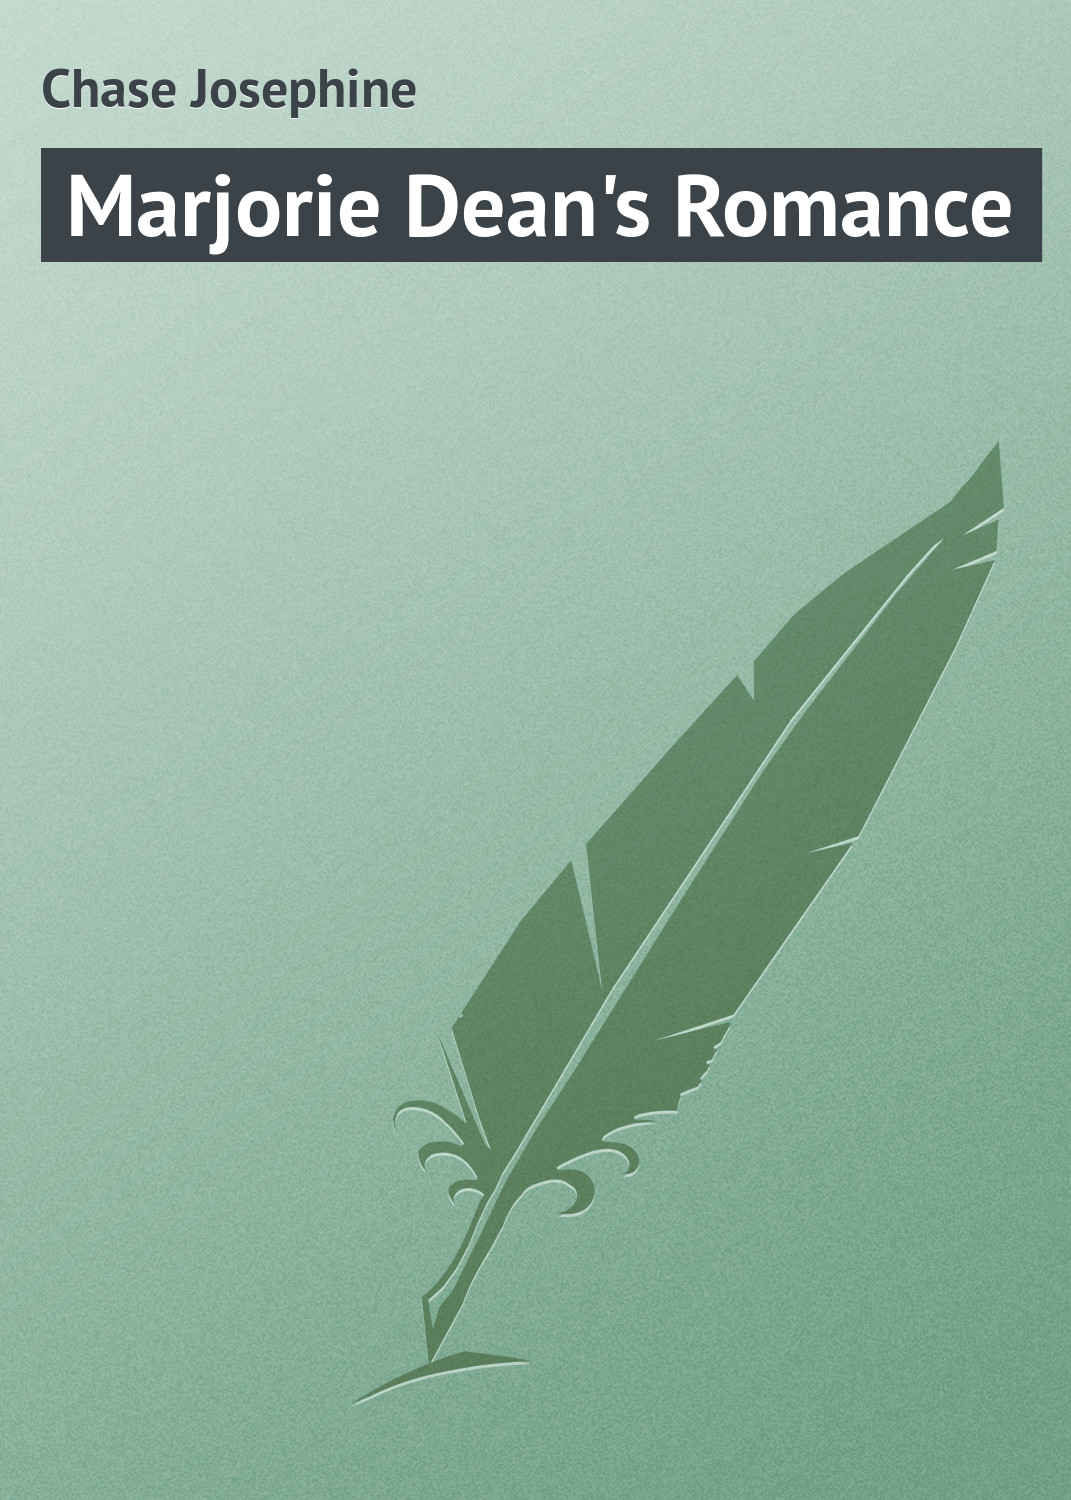 Книга Marjorie Dean's Romance из серии , созданная Chase Josephine, может относится к жанру Зарубежная классика. Стоимость электронной книги Marjorie Dean's Romance с идентификатором 23166995 составляет 5.99 руб.